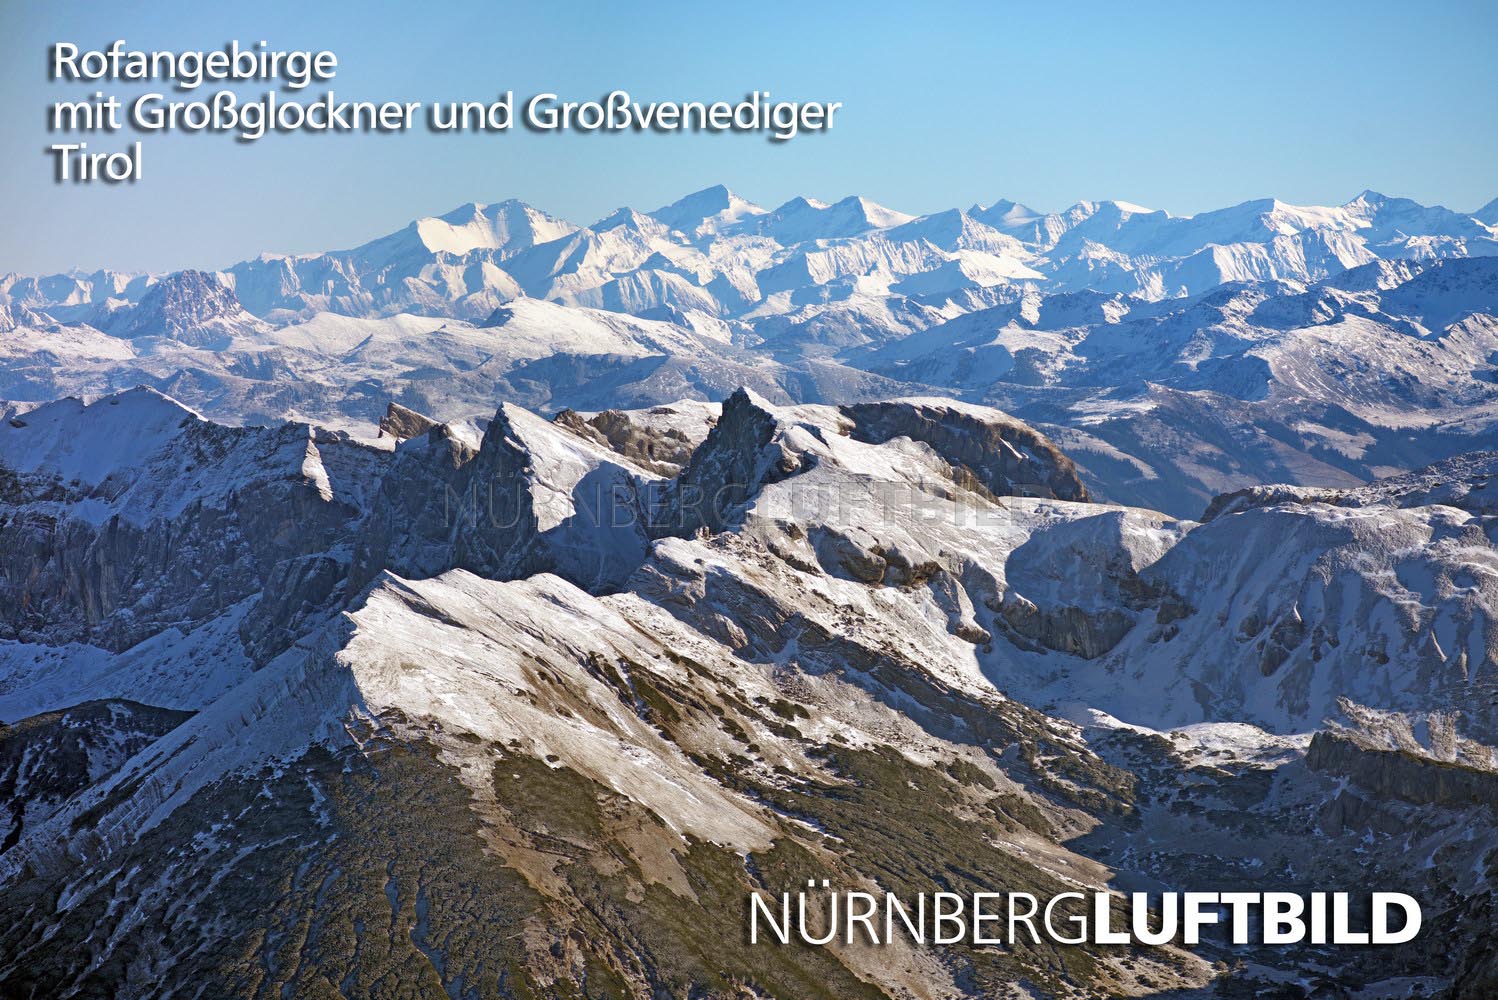 Rofangebirge mit Großglockner und Großvenediger, Tirol, Luftbild